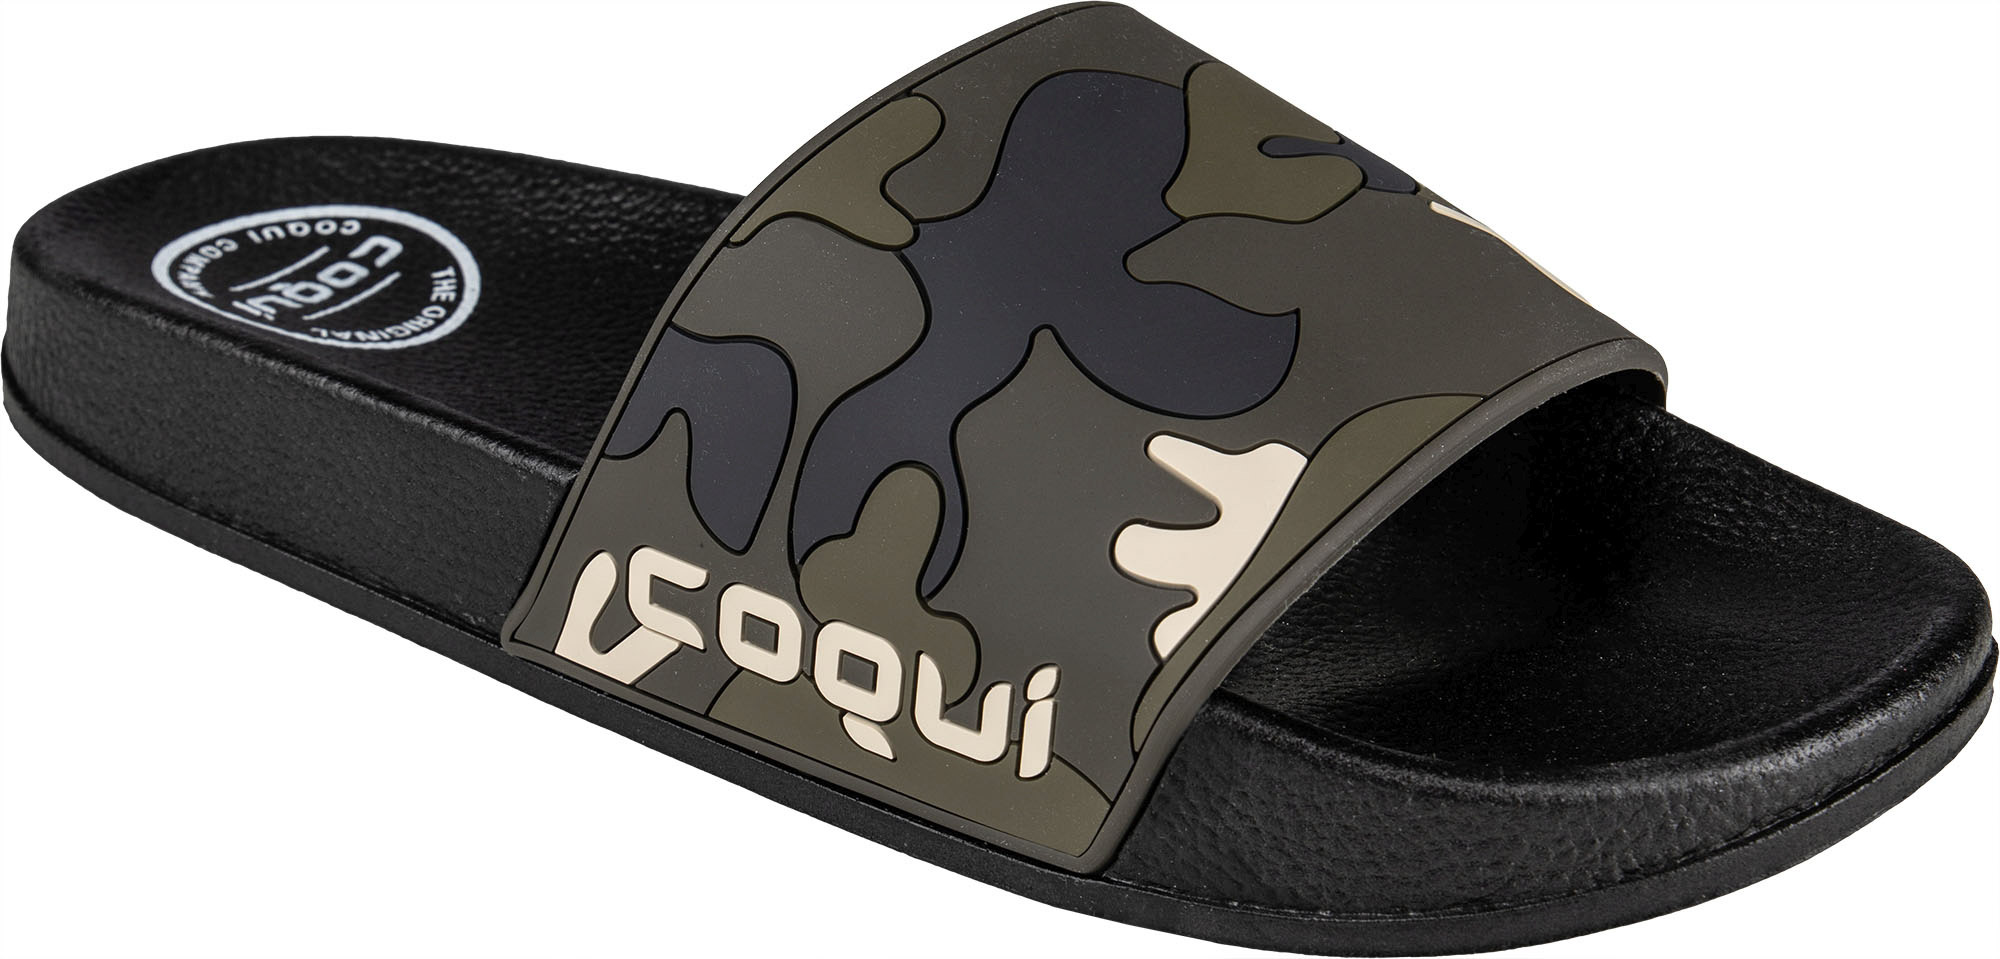 Pánské pantofle Coqui Flexi 6261 Black-Army green camo|41